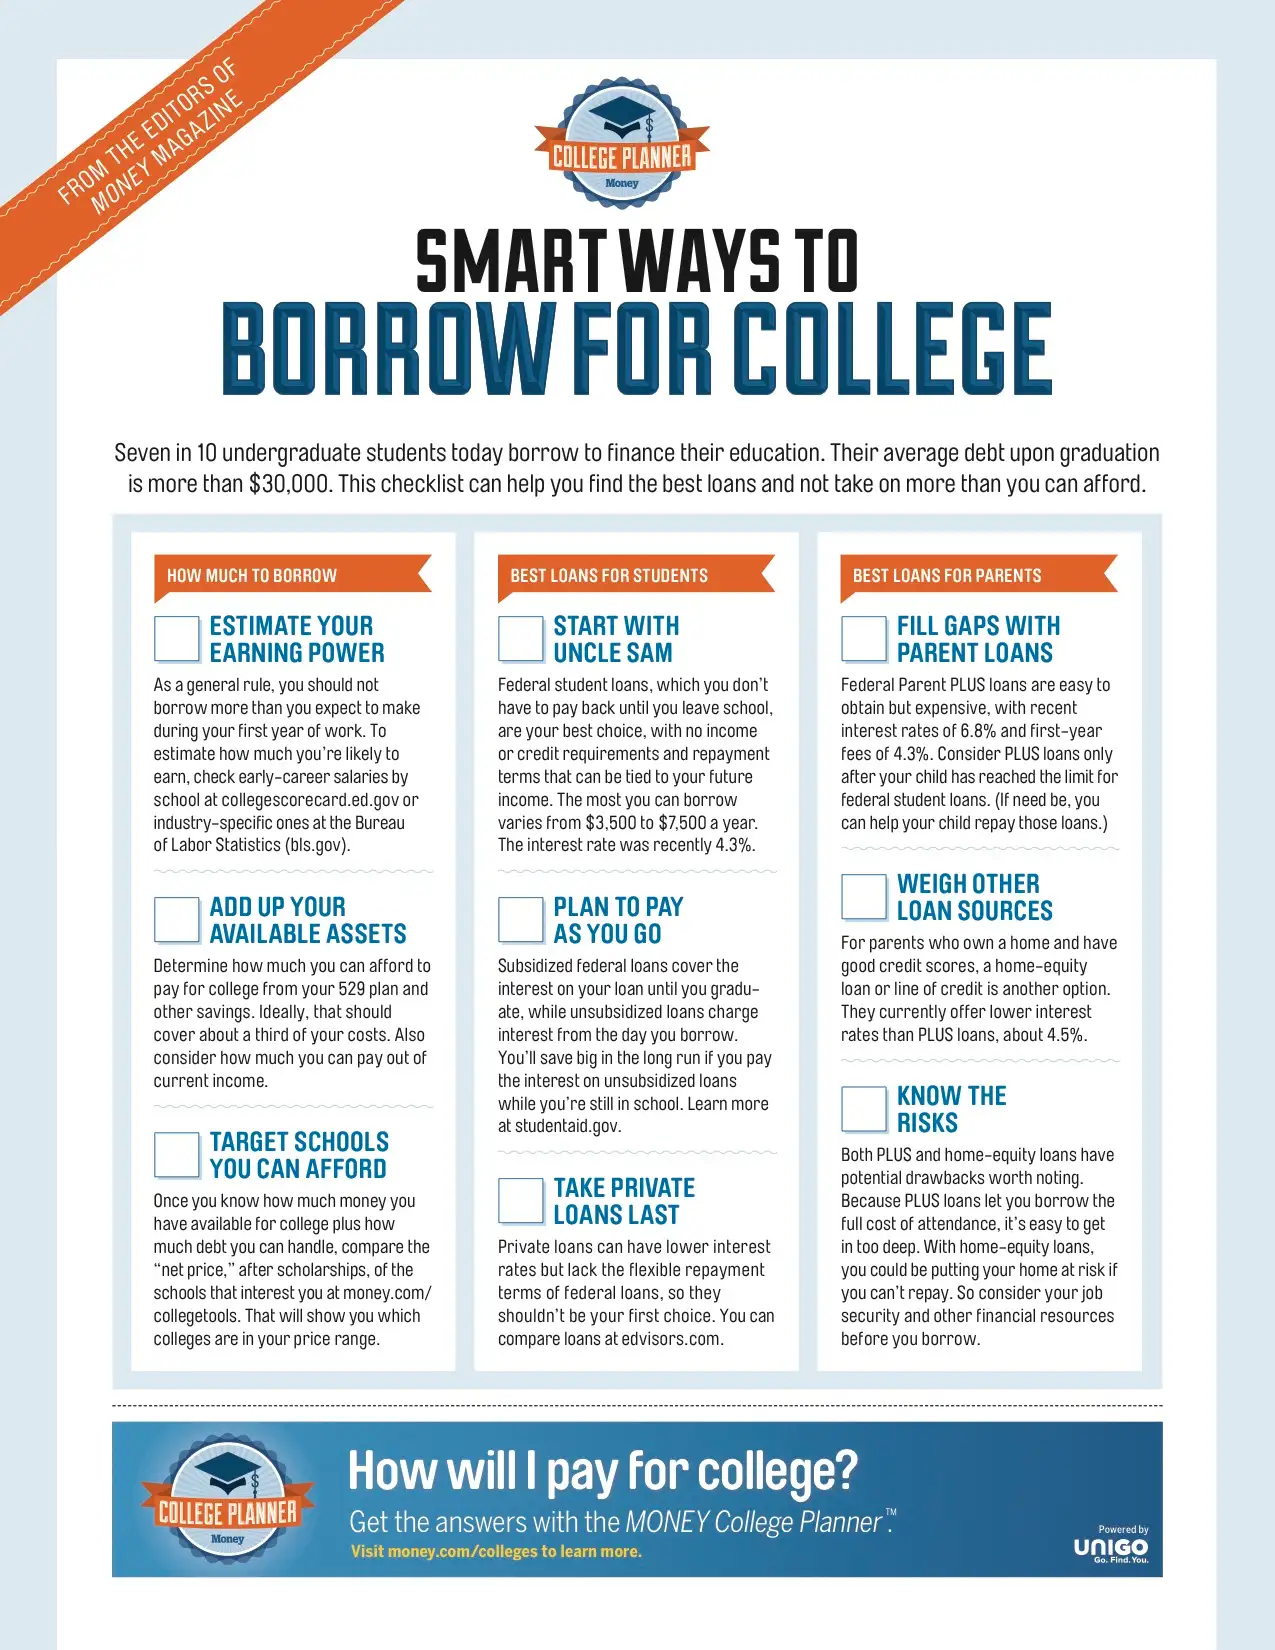 Money_CollegePlanner-Checklist3-Borrowing-FINAL